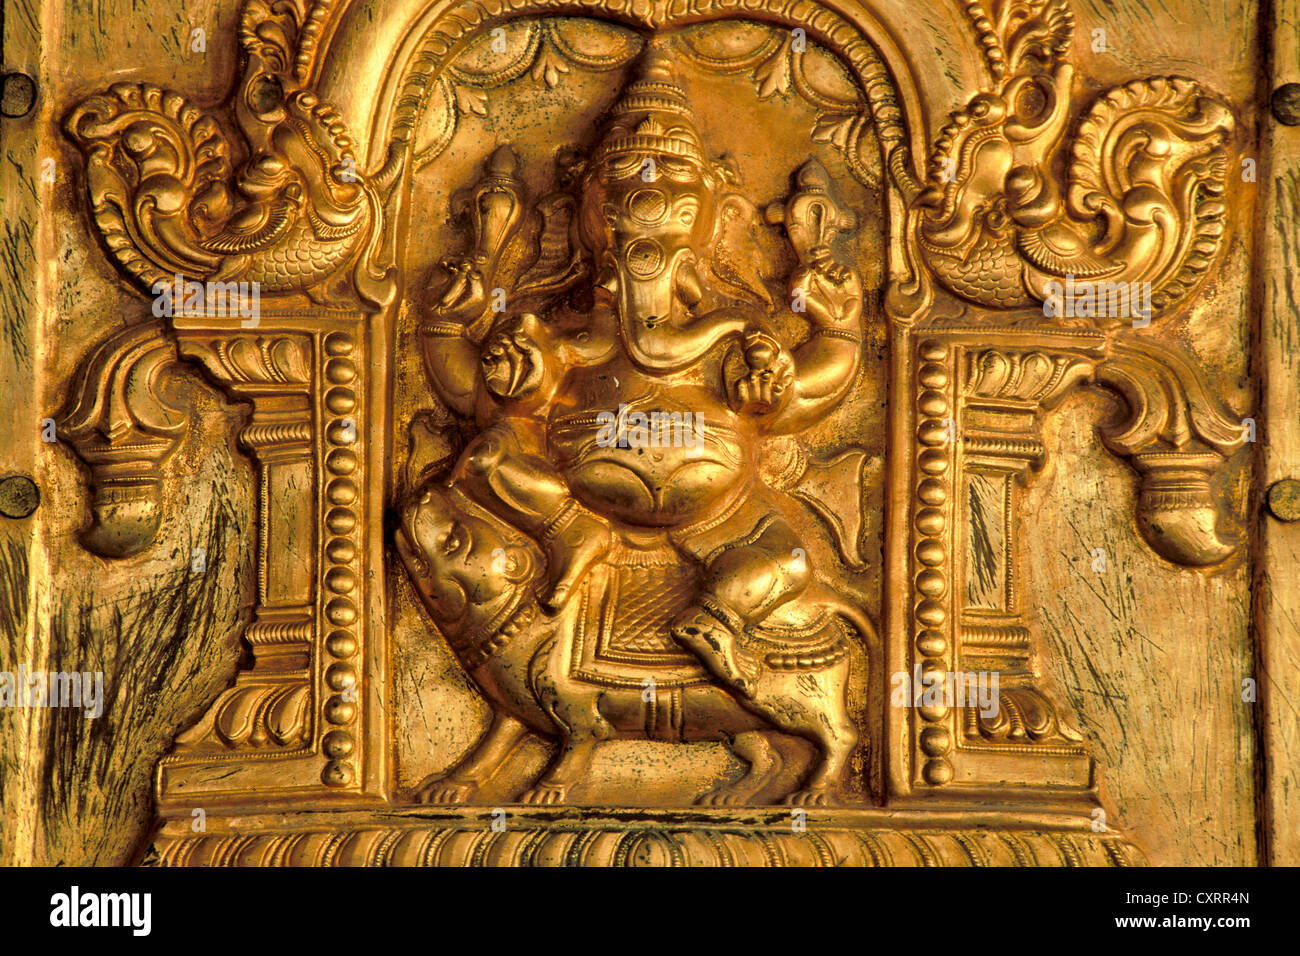 Elefantenköpfige Hindugott Ganesha, Ganesh oder Ganpati montiert auf einer Ratte, vergoldete Relief, Madurai, Tamil Nadu, Südindien, Indien Stockfoto